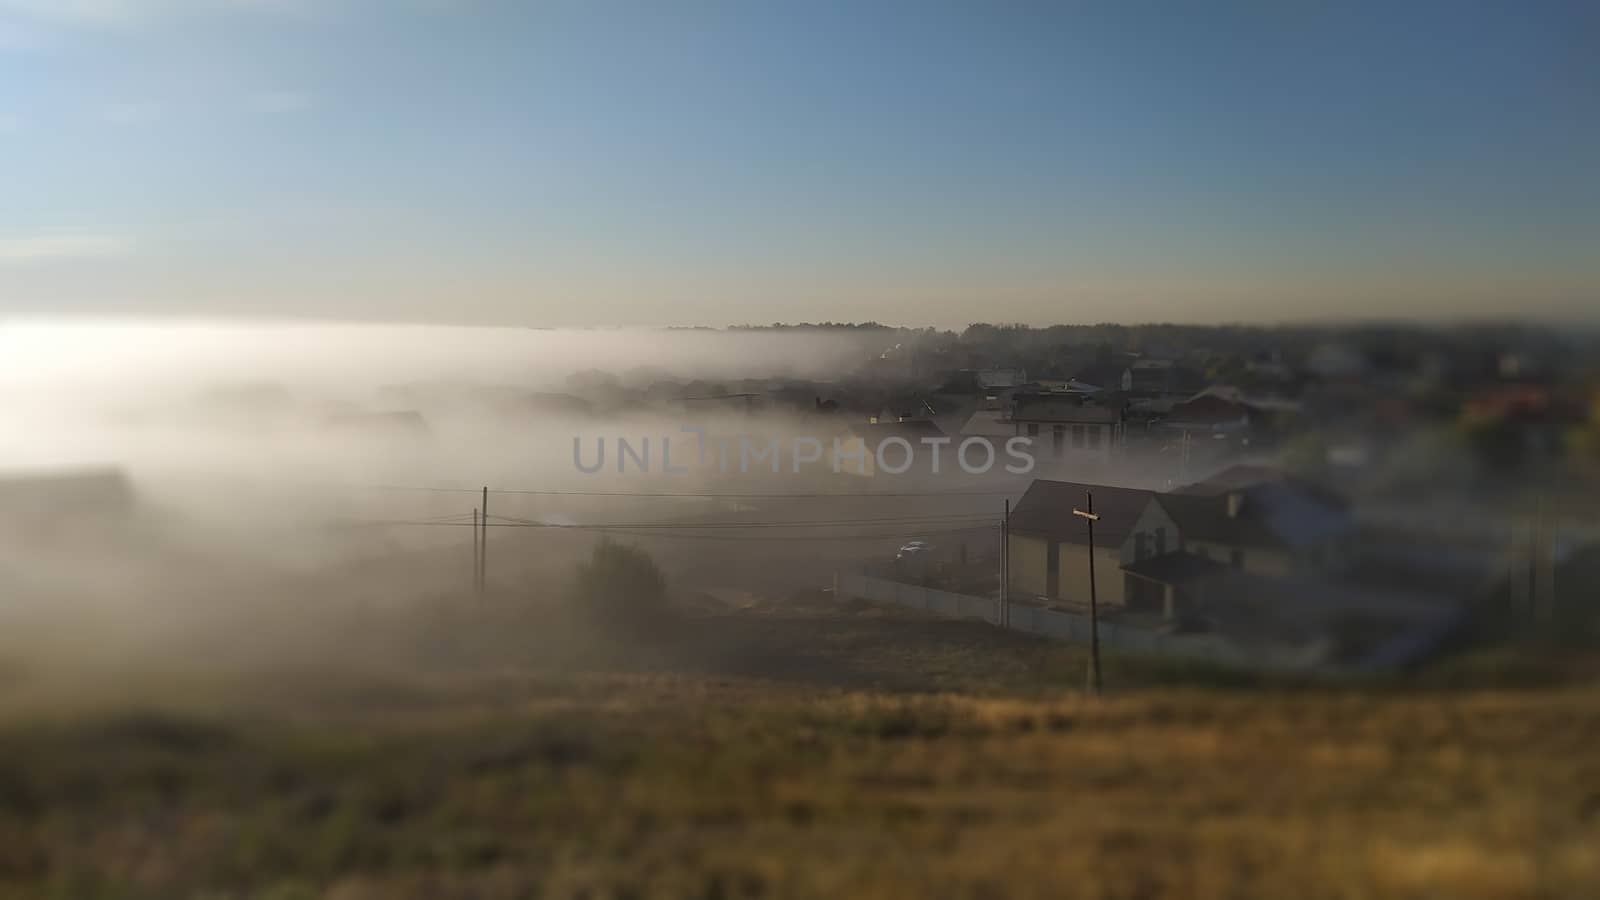 Early Morning village in fog. Tilt shift effect by marynkin